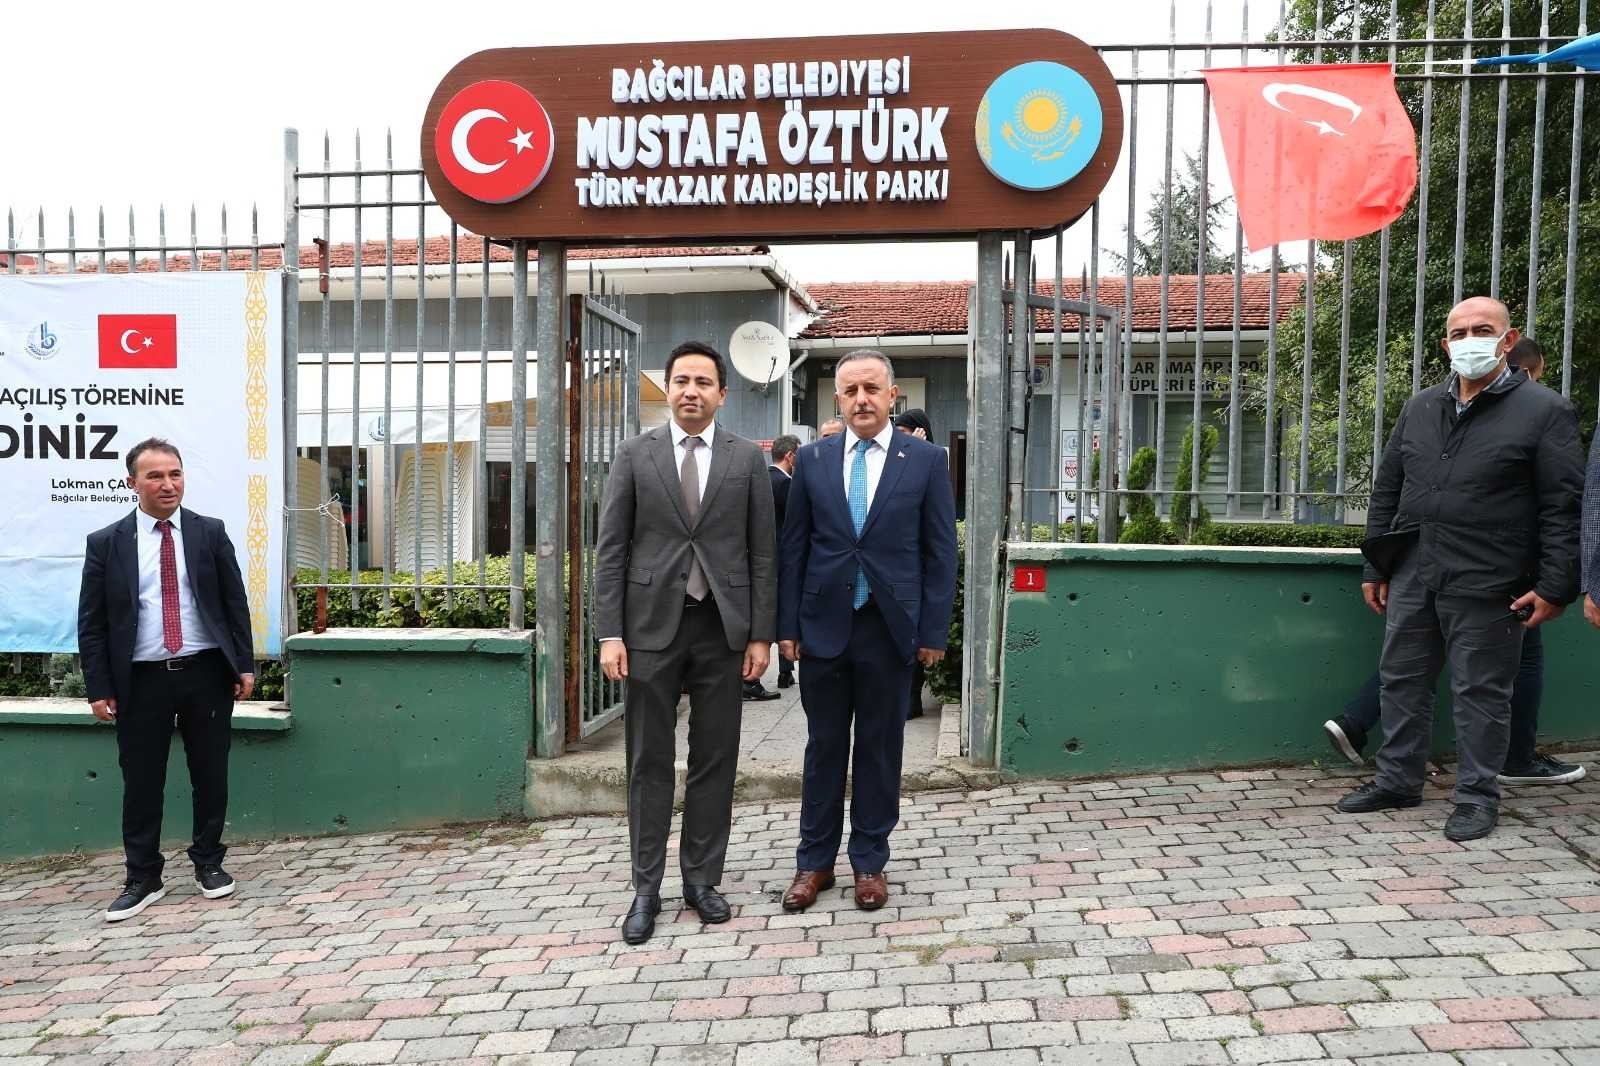 Bağcılar’da Mustafa Öztürk Türk Kazak Kardeşlik Parkı açıldı #istanbul